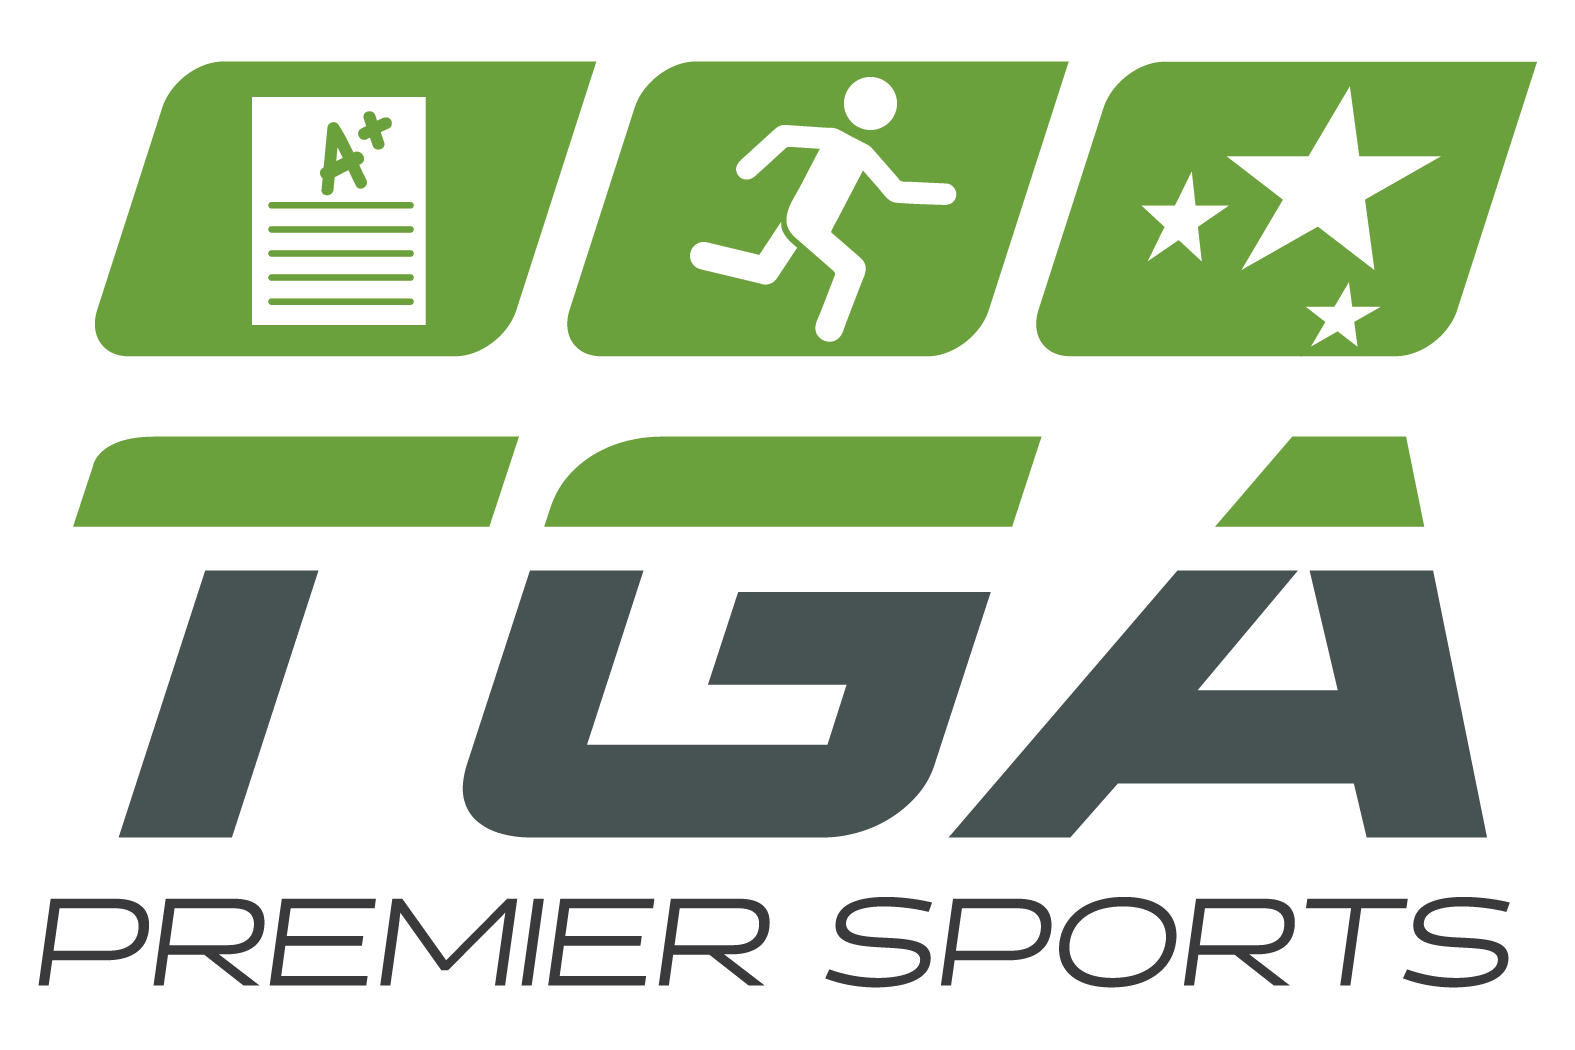 TGA Premier Sports Lauded Among Top Franchisors on Entrepreneur List